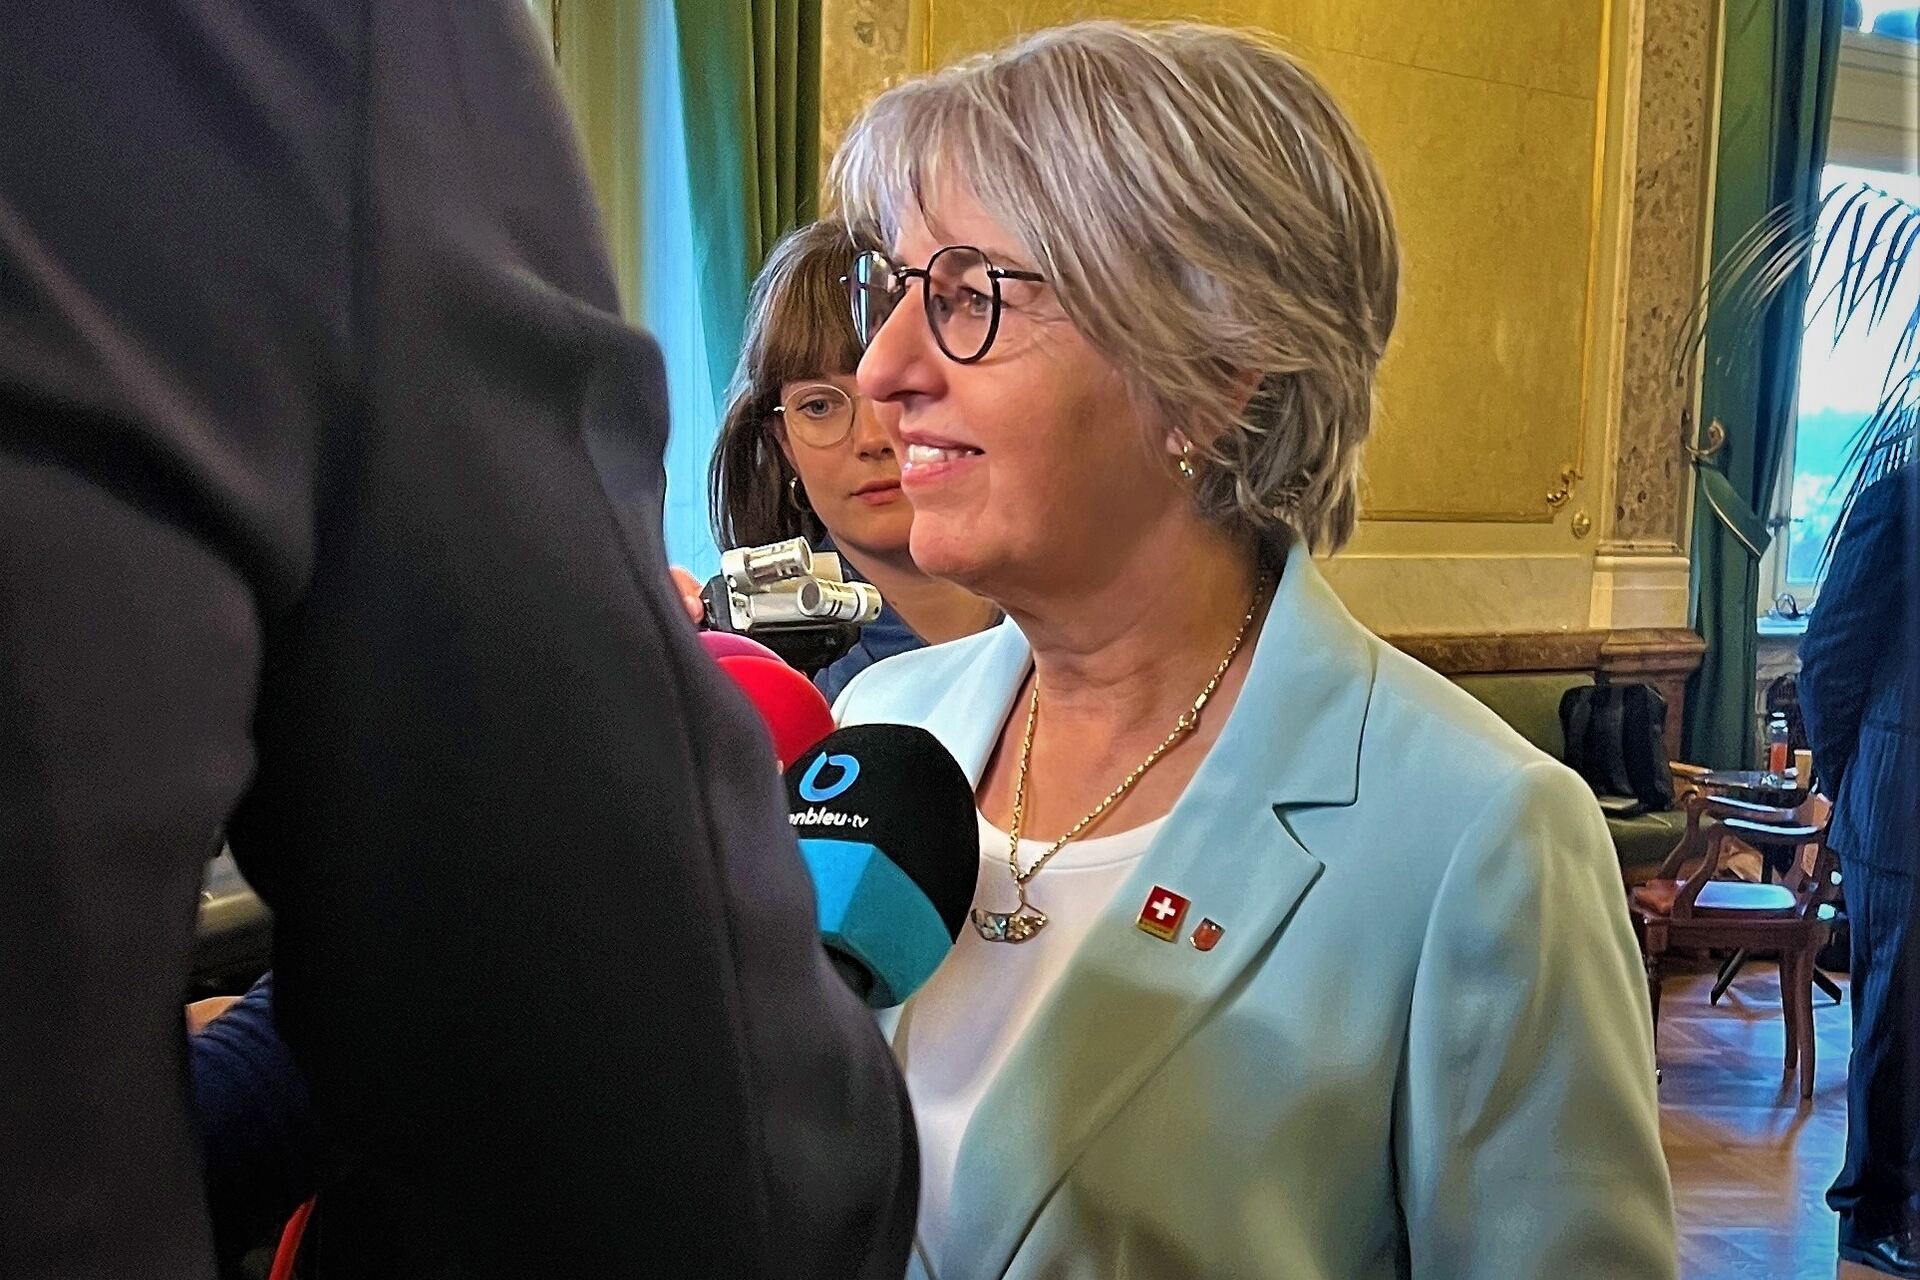 Consiglio Federale: la felicità della nuova Consigliera Federale svizzera Elizabeth Baume-Schneider, proveniente dal Canton Giura e dalle file del Partito Socialista Svizzero